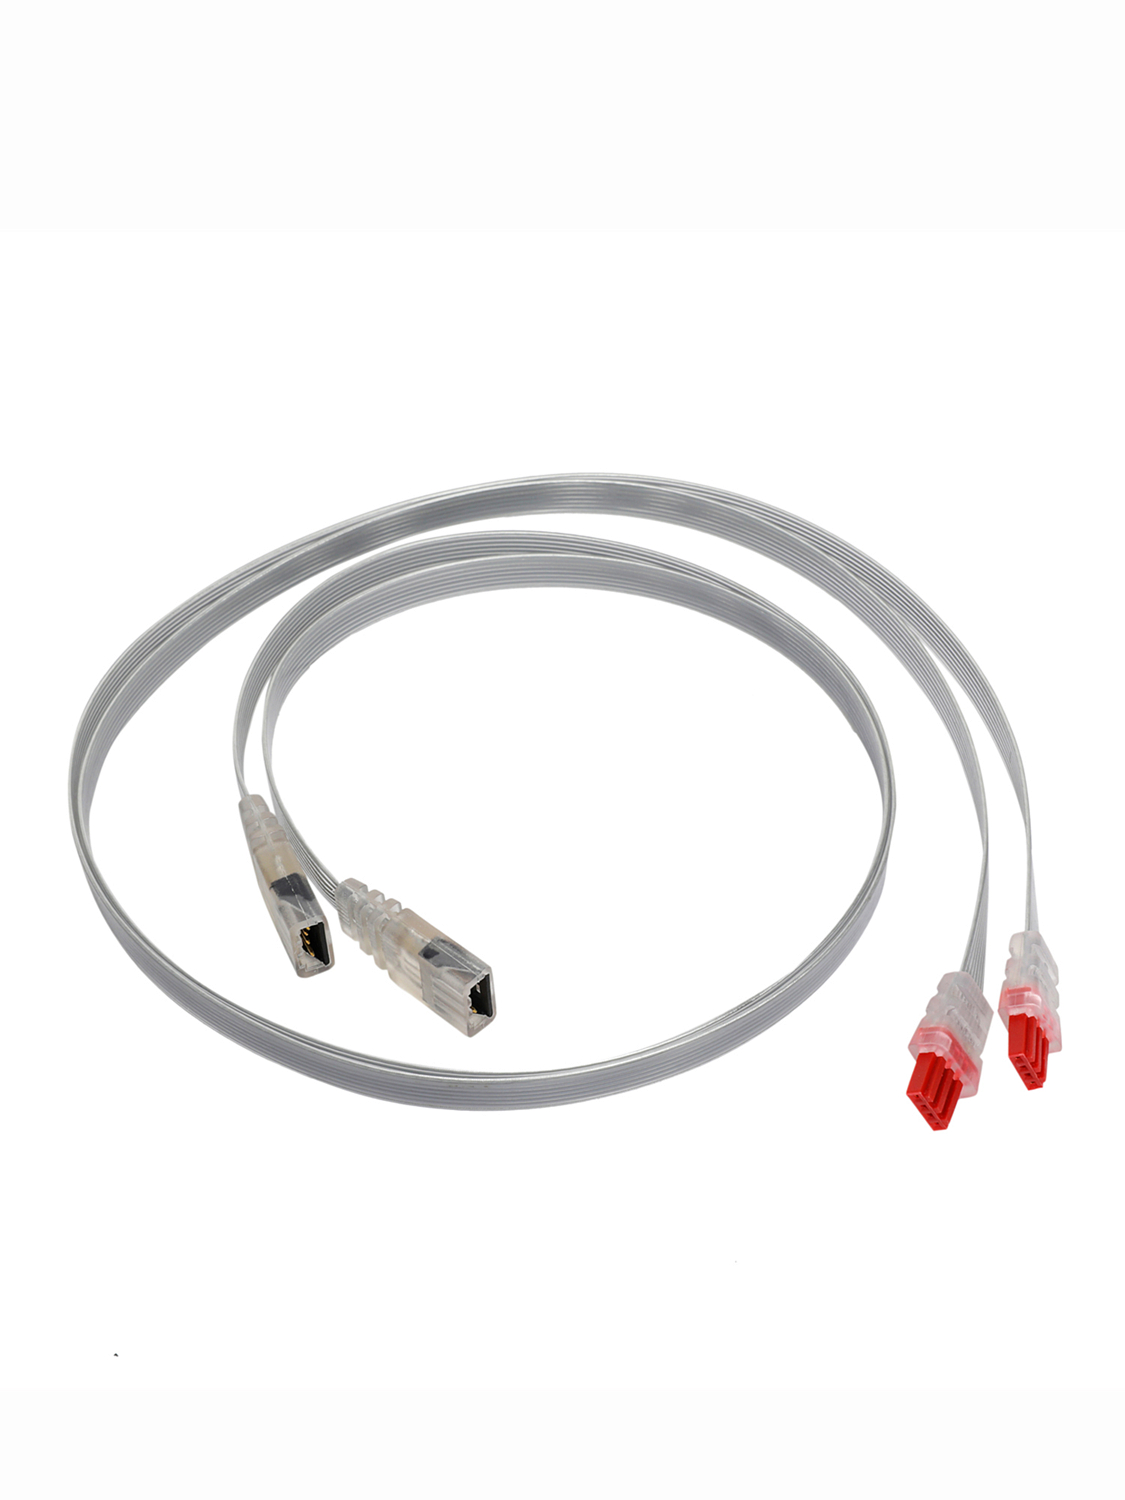 Удлиннительный кабель Therm-IC Extension Cord 80 cm (pair)